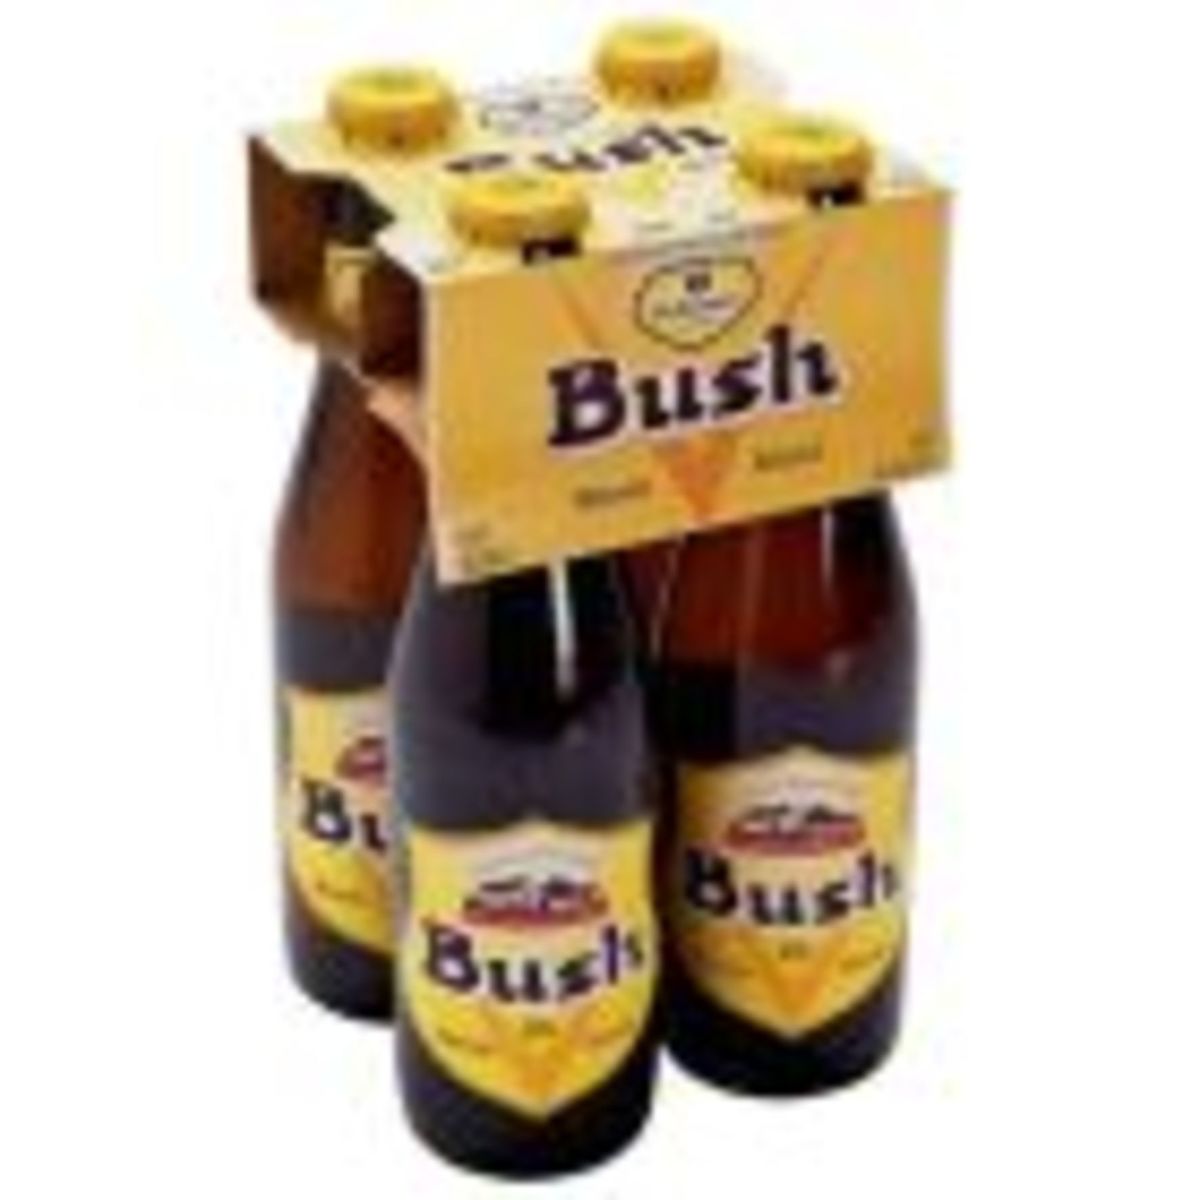 Bush Blond Triple Krat 6 x 4 x 33 cl